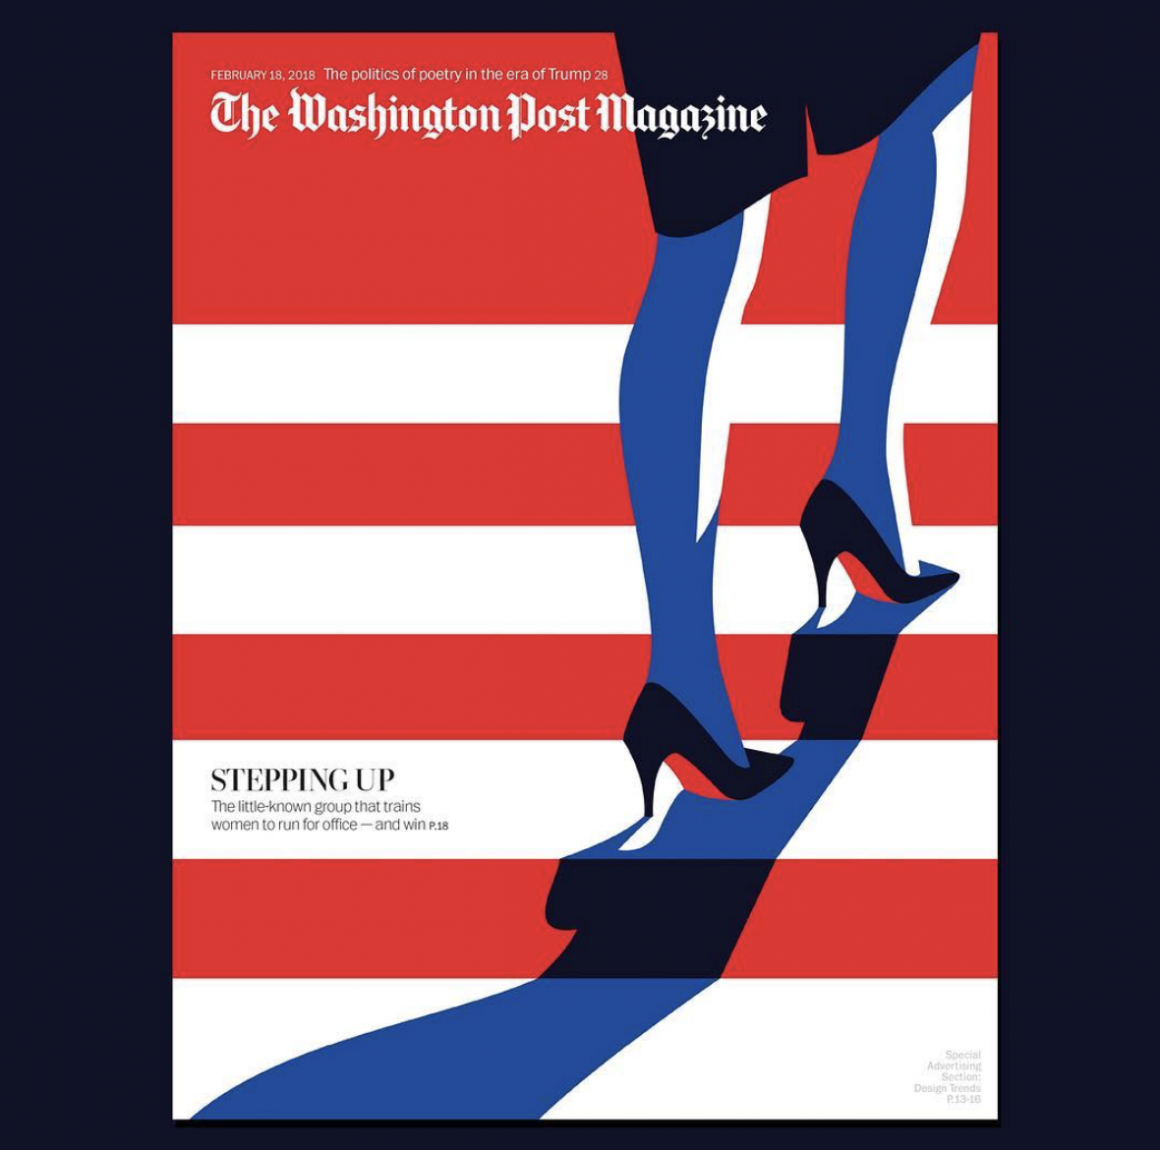 Couverture du Washington Post par Malika Favre